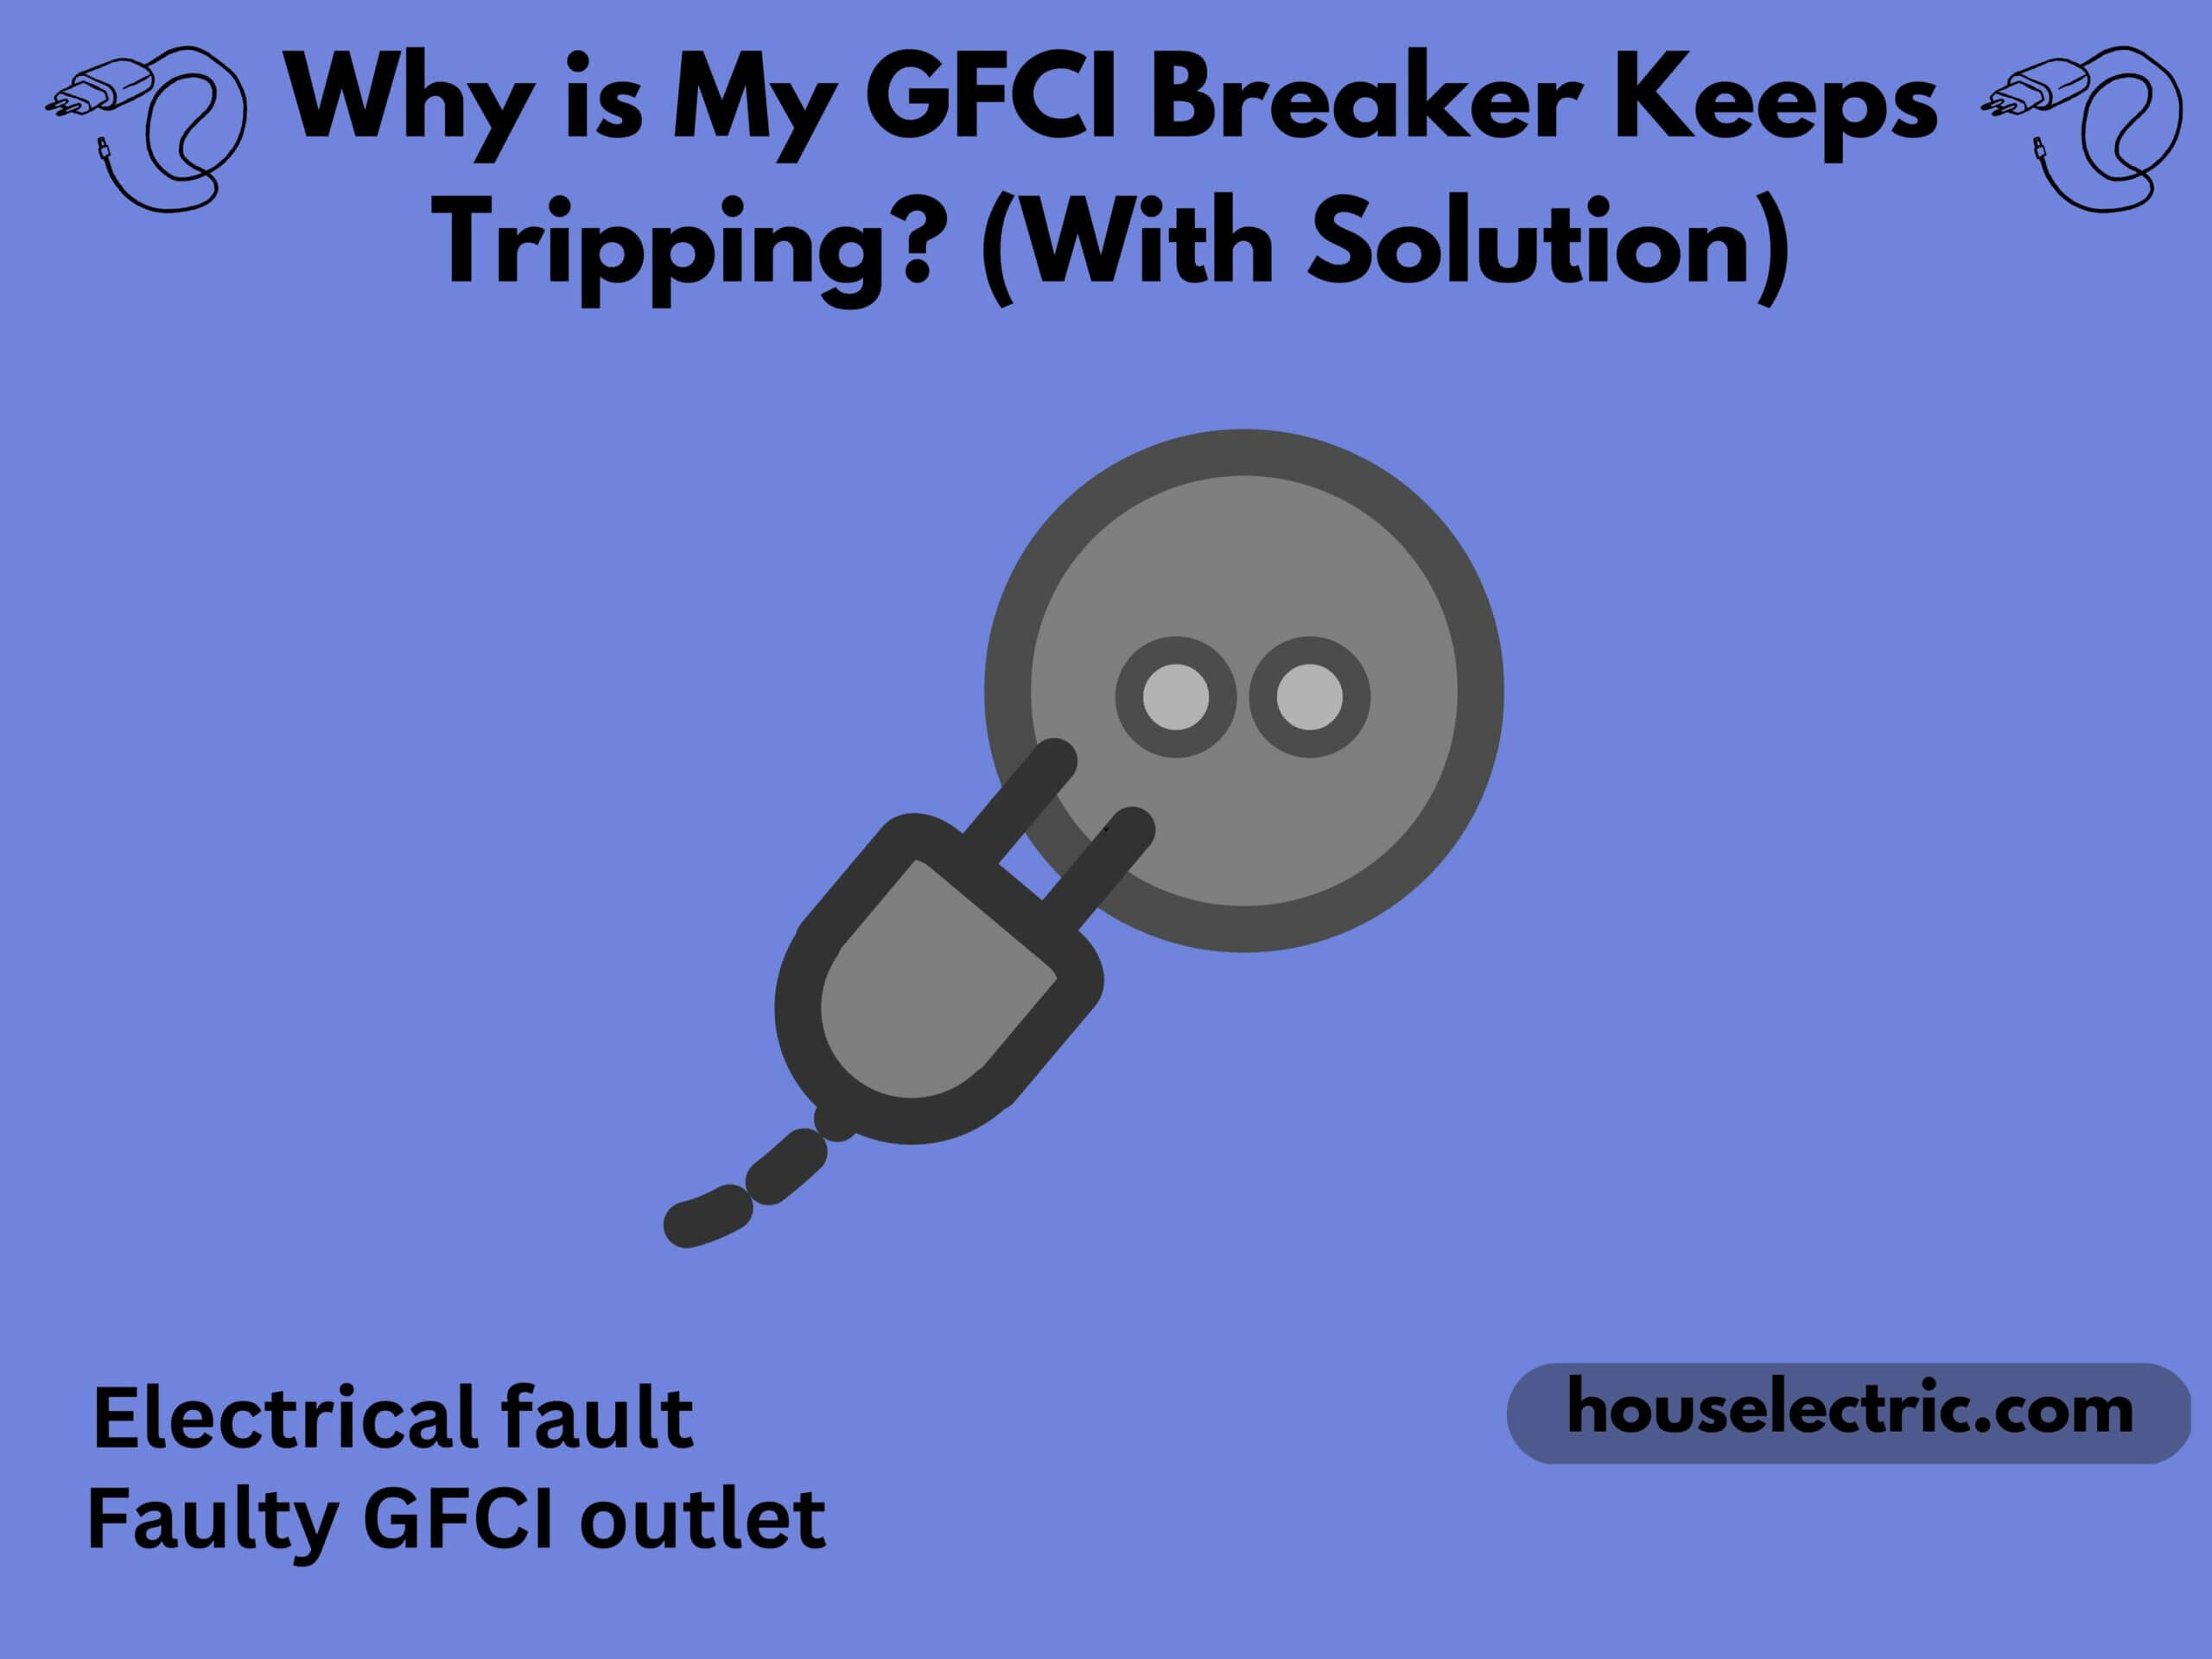 GFCI Breaker Keeps Tripping